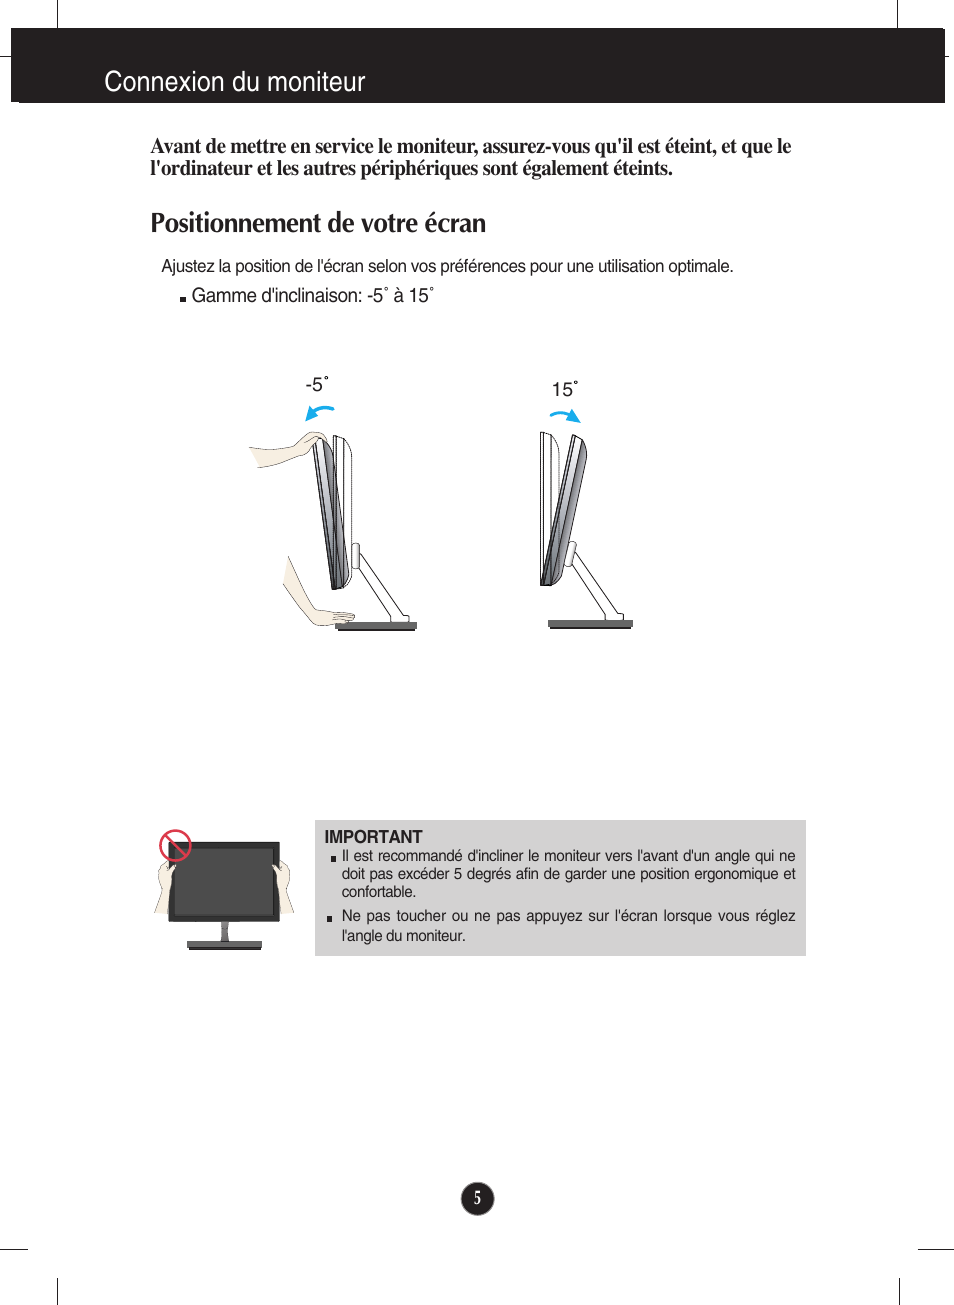 Connexion du moniteur, Positionnement de votre écran | LG E2290V-SN Manuel d'utilisation | Page 6 / 26